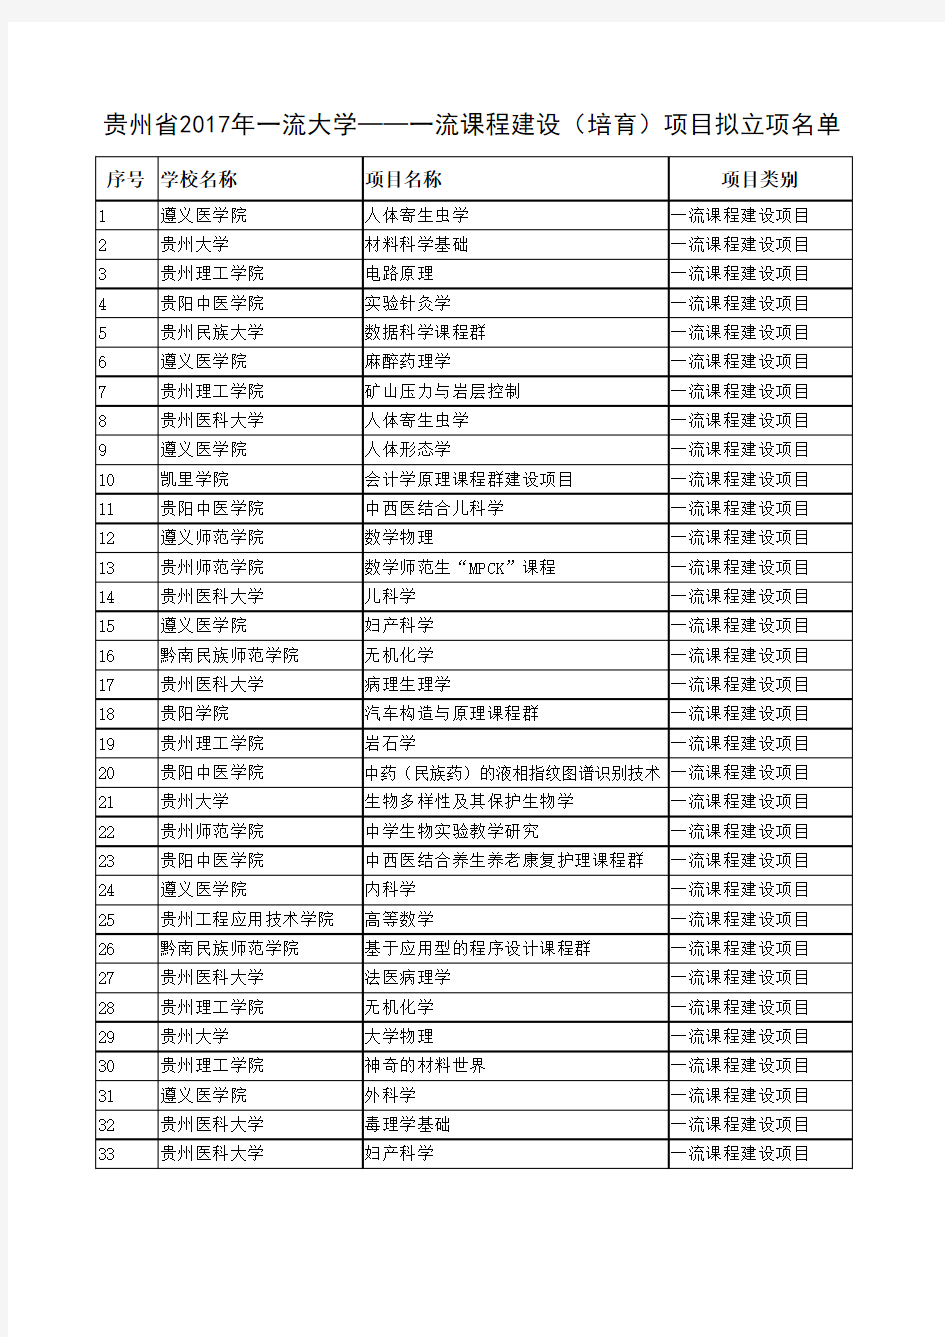 贵州省2017年一流大学--一流课程建设(培育)项目拟立项名单